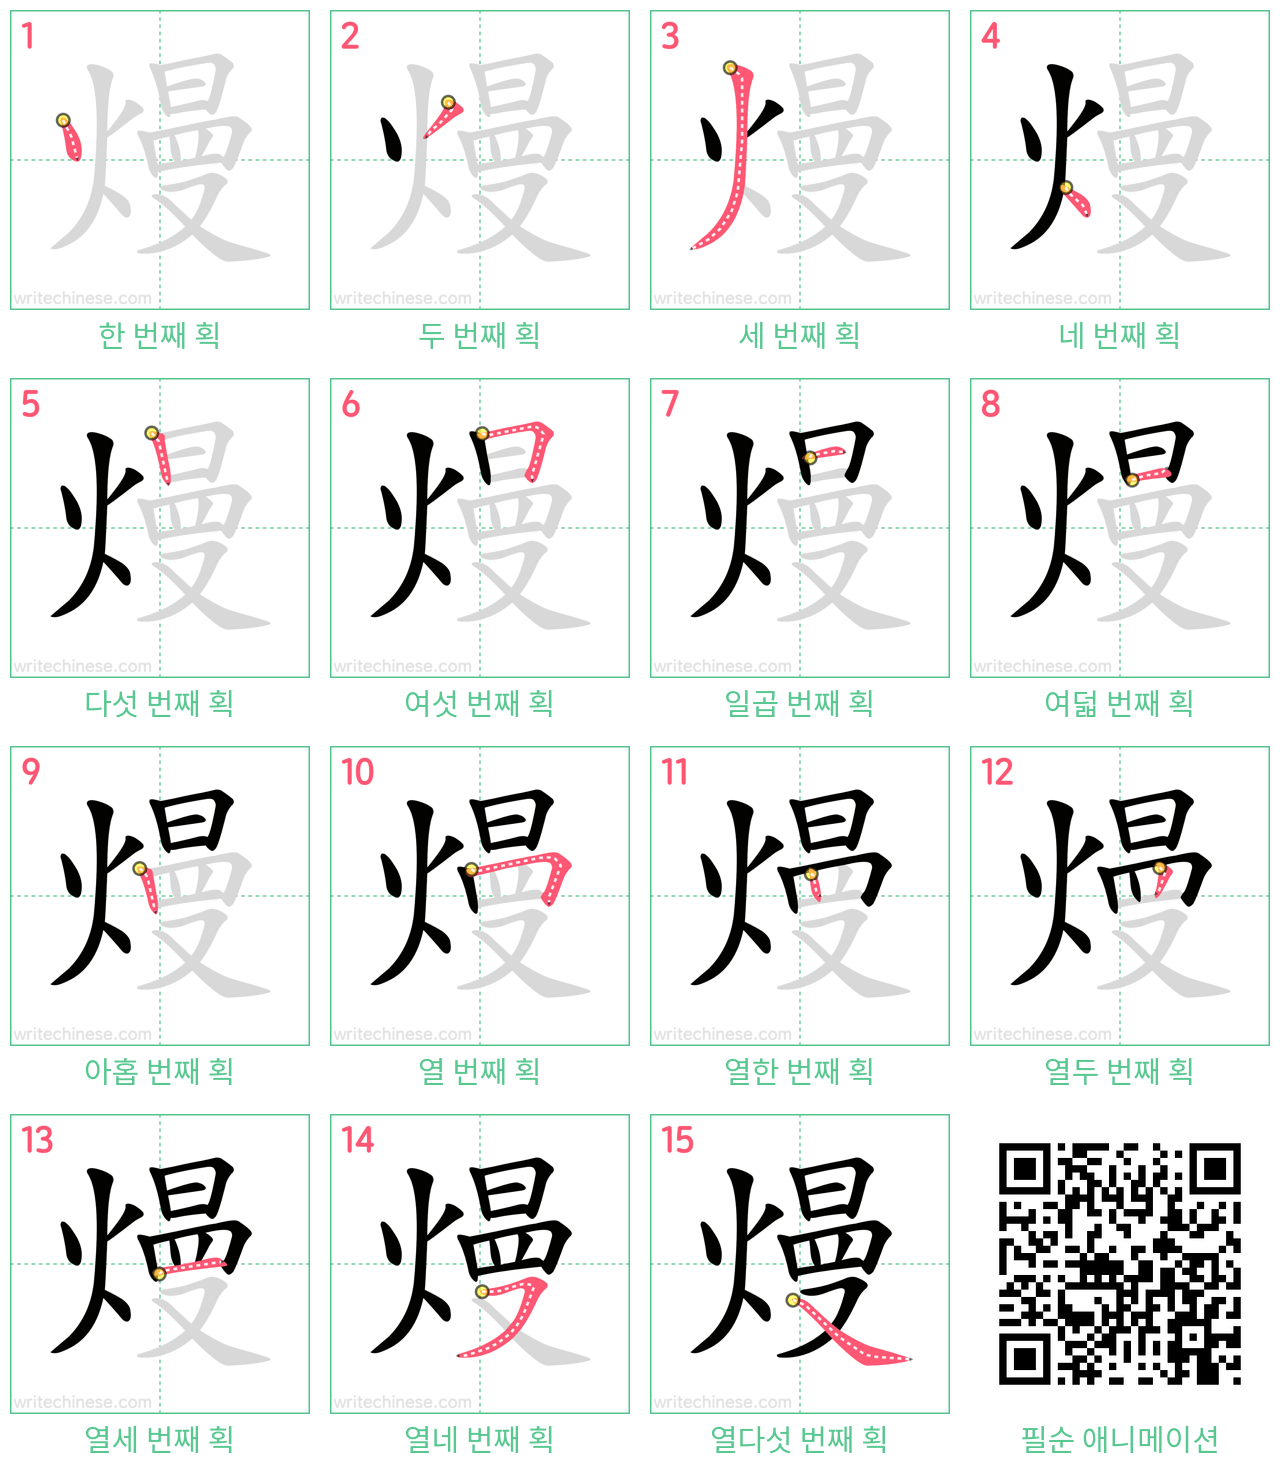 熳 step-by-step stroke order diagrams